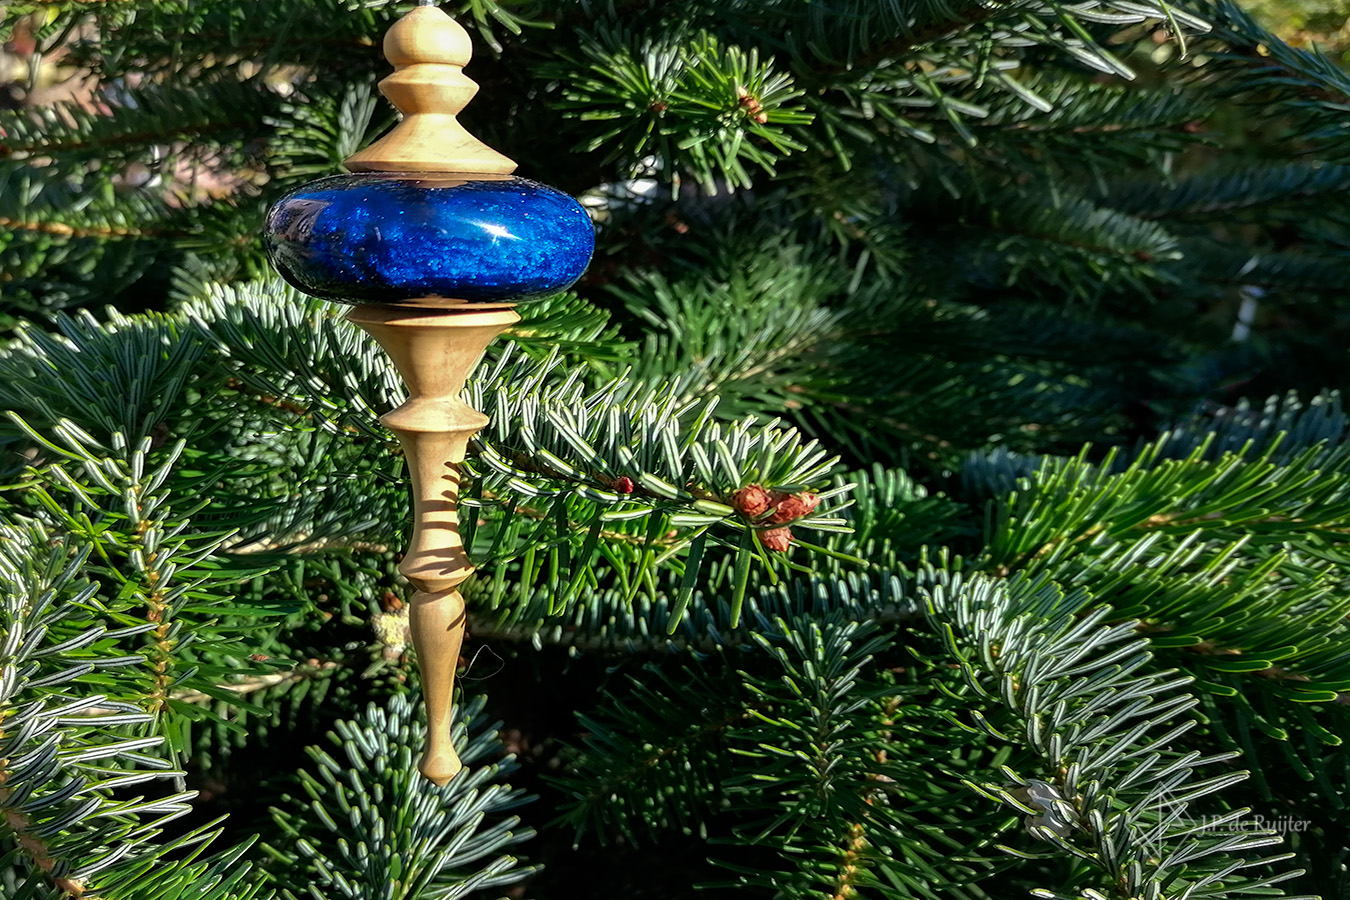 Handgemaakt via houtdraaien, ornament voor kerst van buxus hout met een bal van epoxy kunst glas in blauw met goud. deze hant in een kerstboom. 